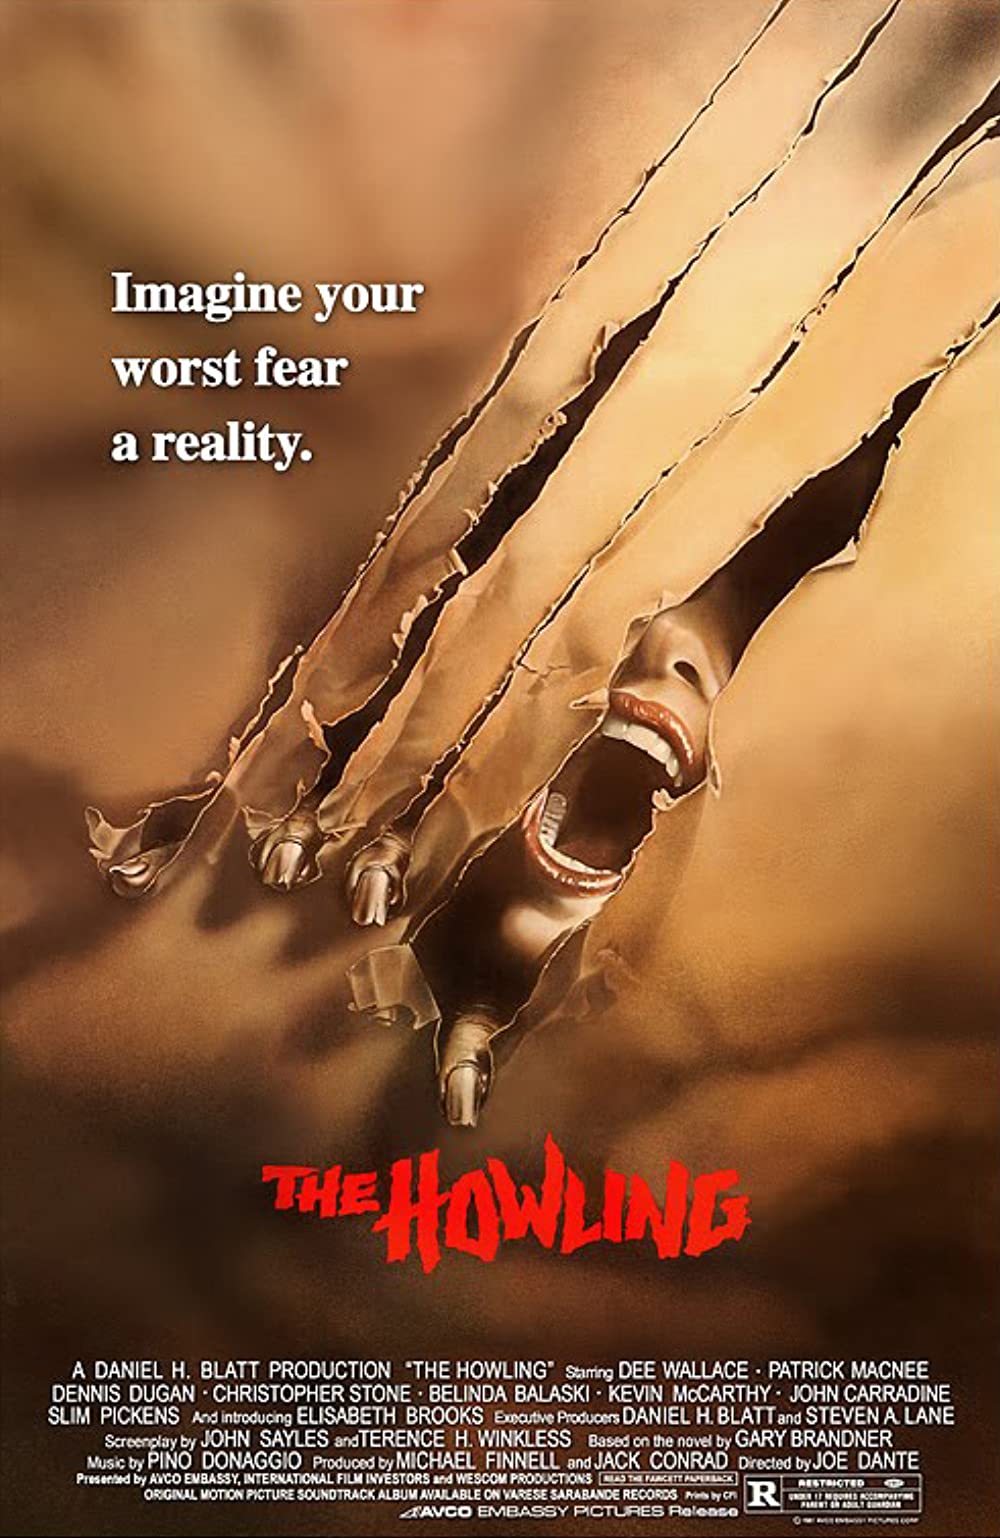 Filmbeschreibung zu The Howling